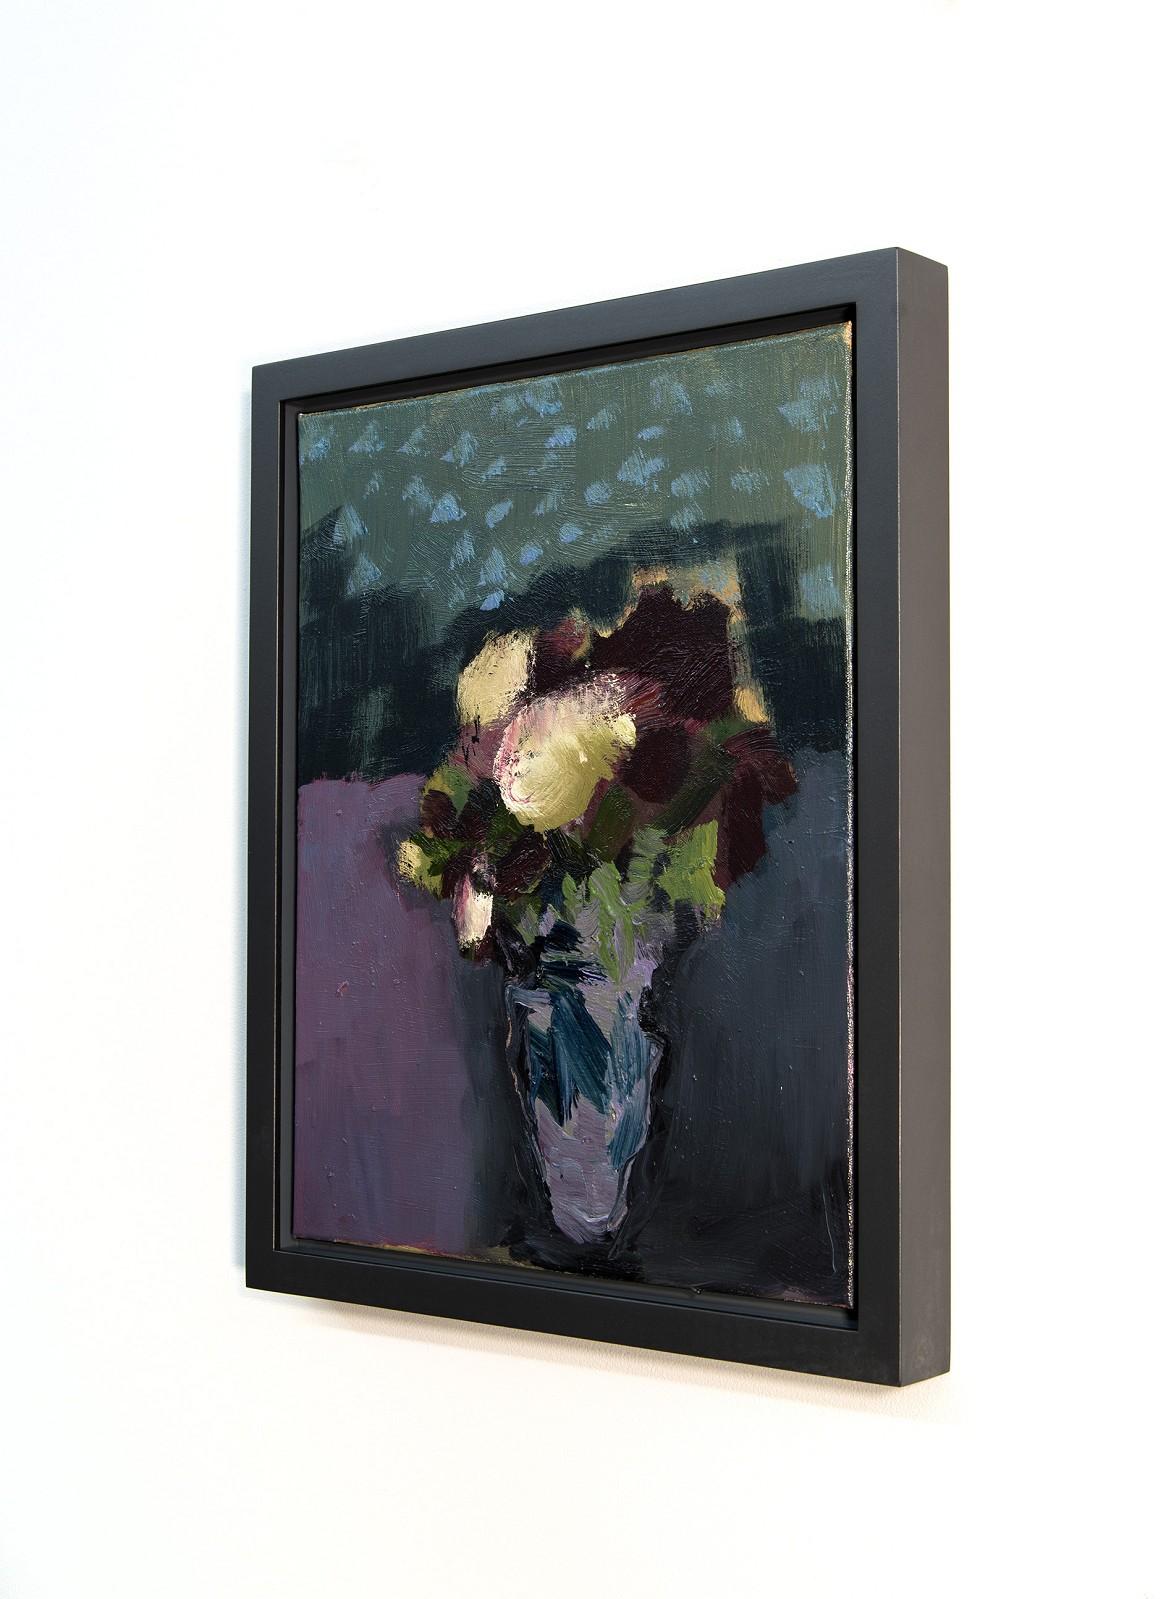 Auf diesem wunderschönen Ölgemälde der britischen Künstlerin Jennifer Hornyak dominieren tiefe burgunder- und cremefarbene Blumen die Leinwand. Hornyak ist bekannt für ihre abstrakten und figurativen Werke in leuchtenden Farben. Sie lässt sich